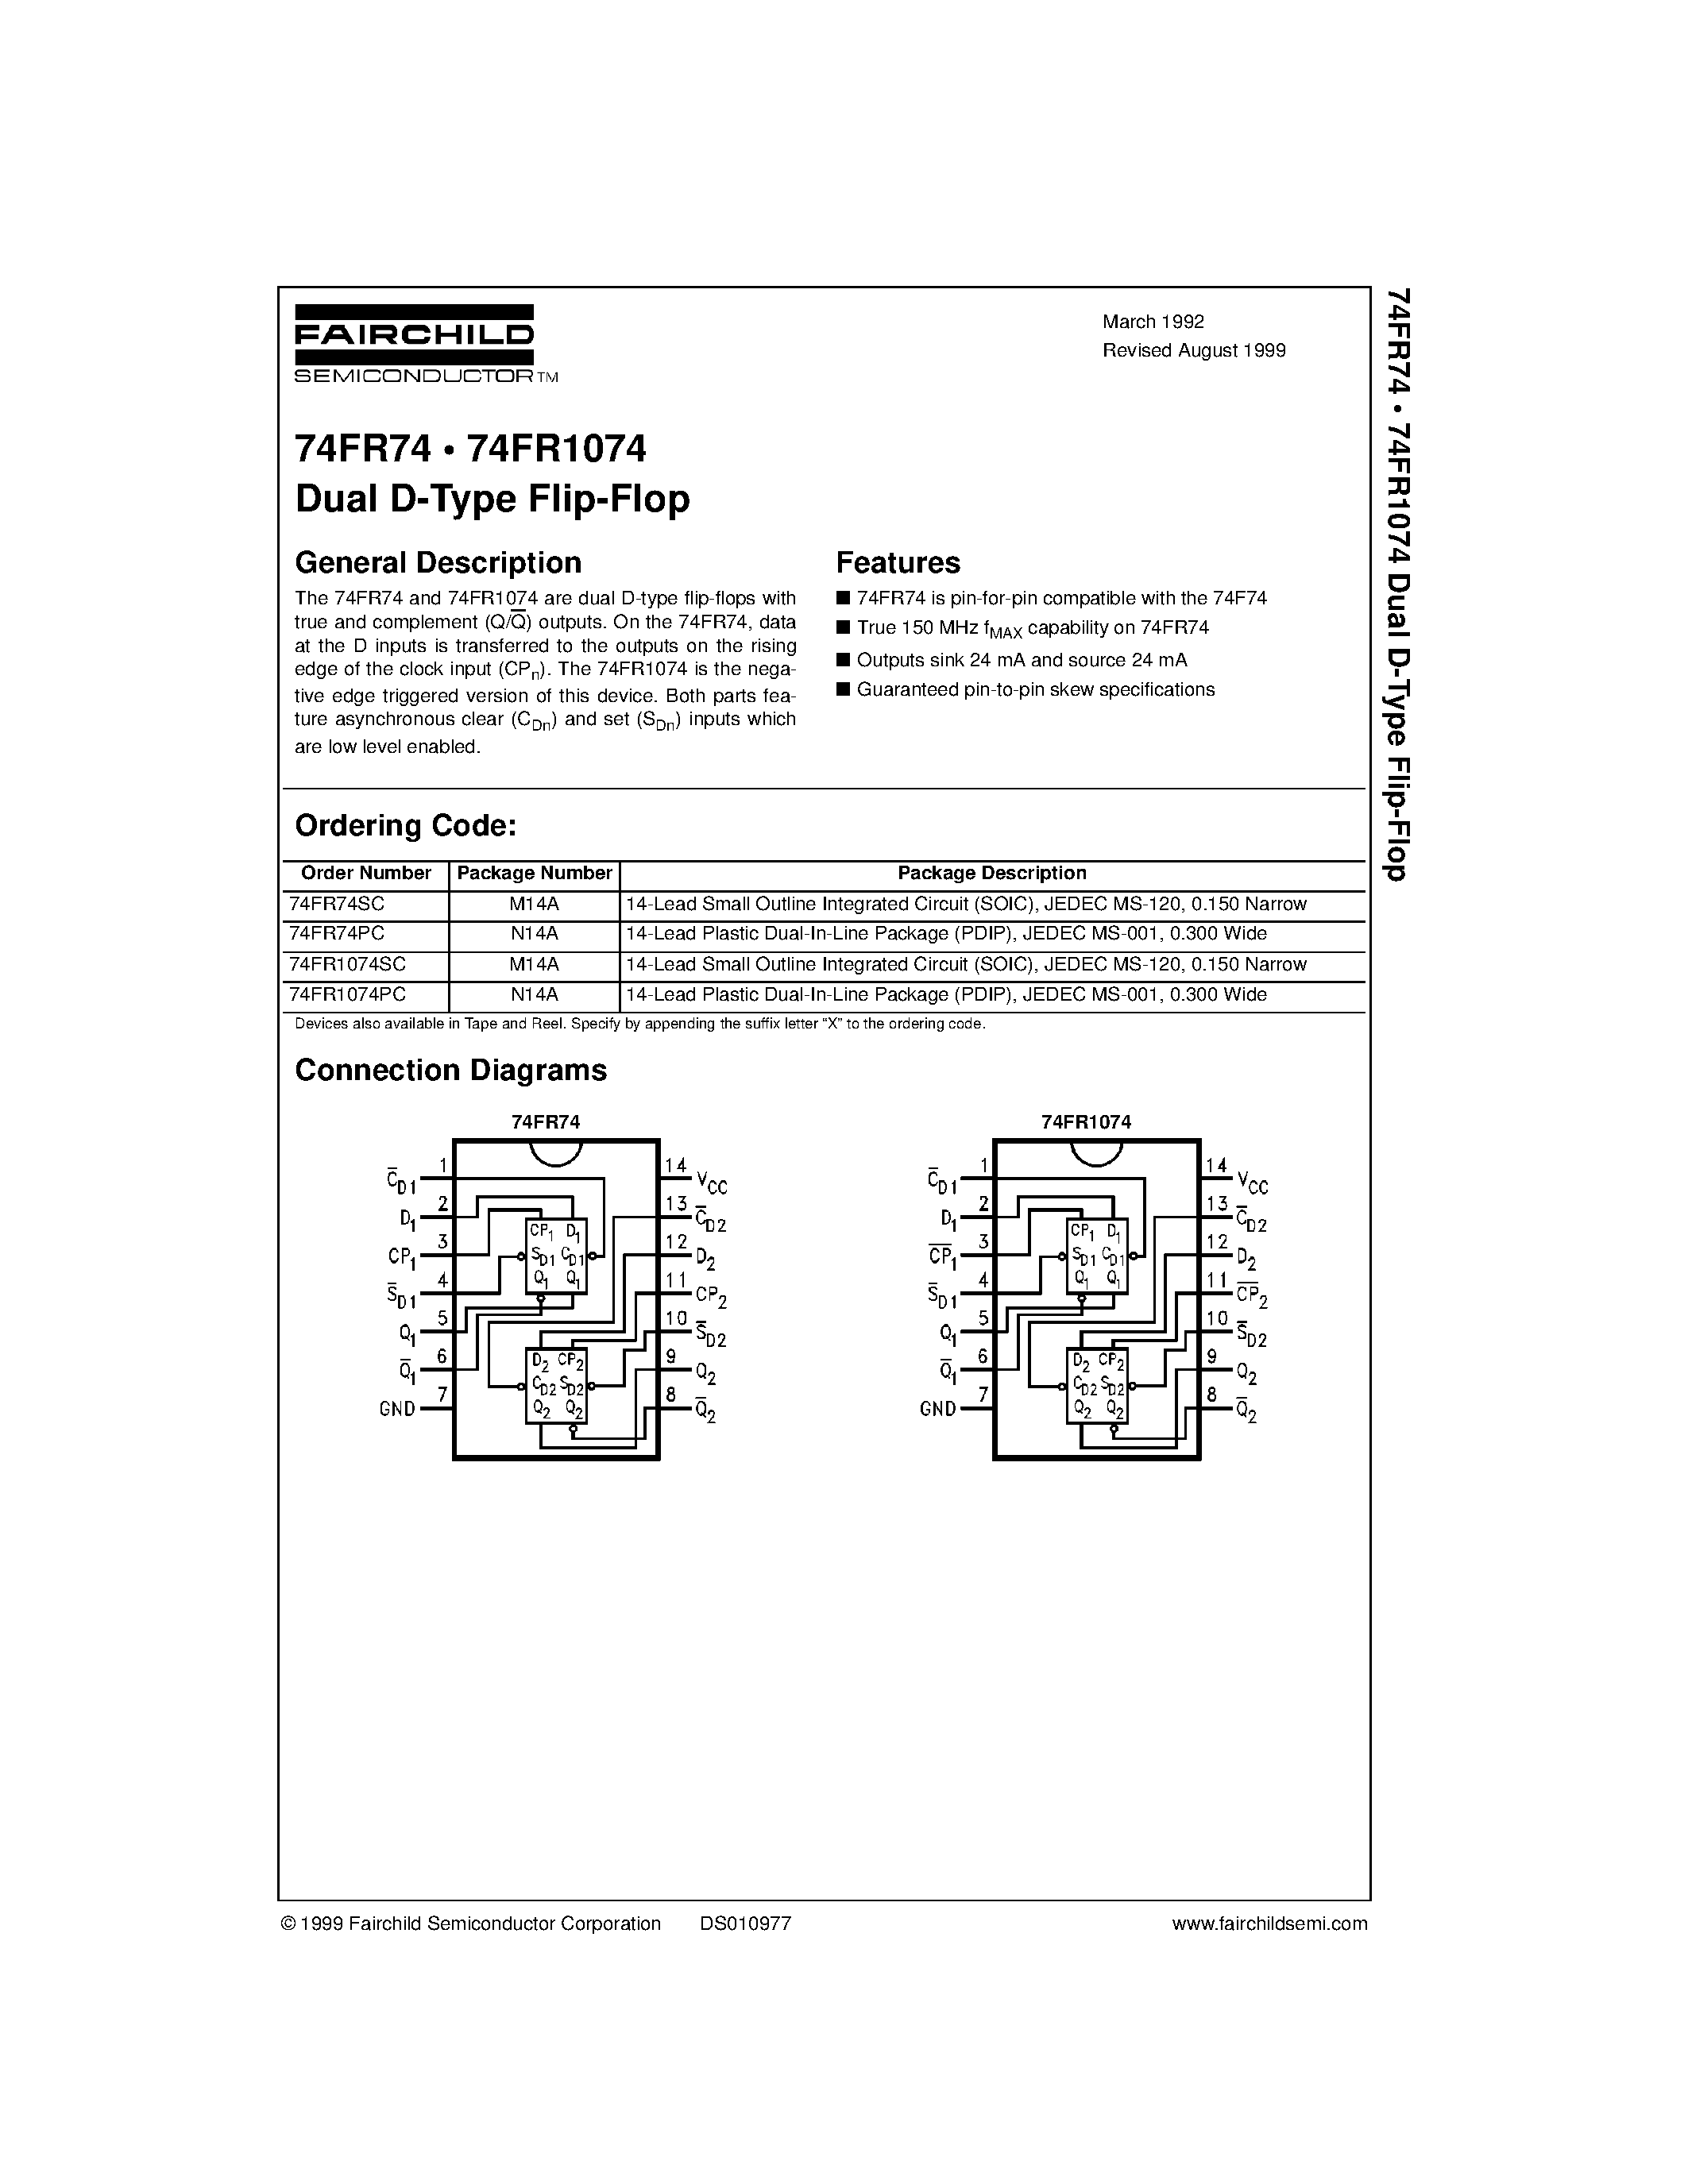 Datasheet 74FR1074PC - Dual D-Type Flip-Flop page 1